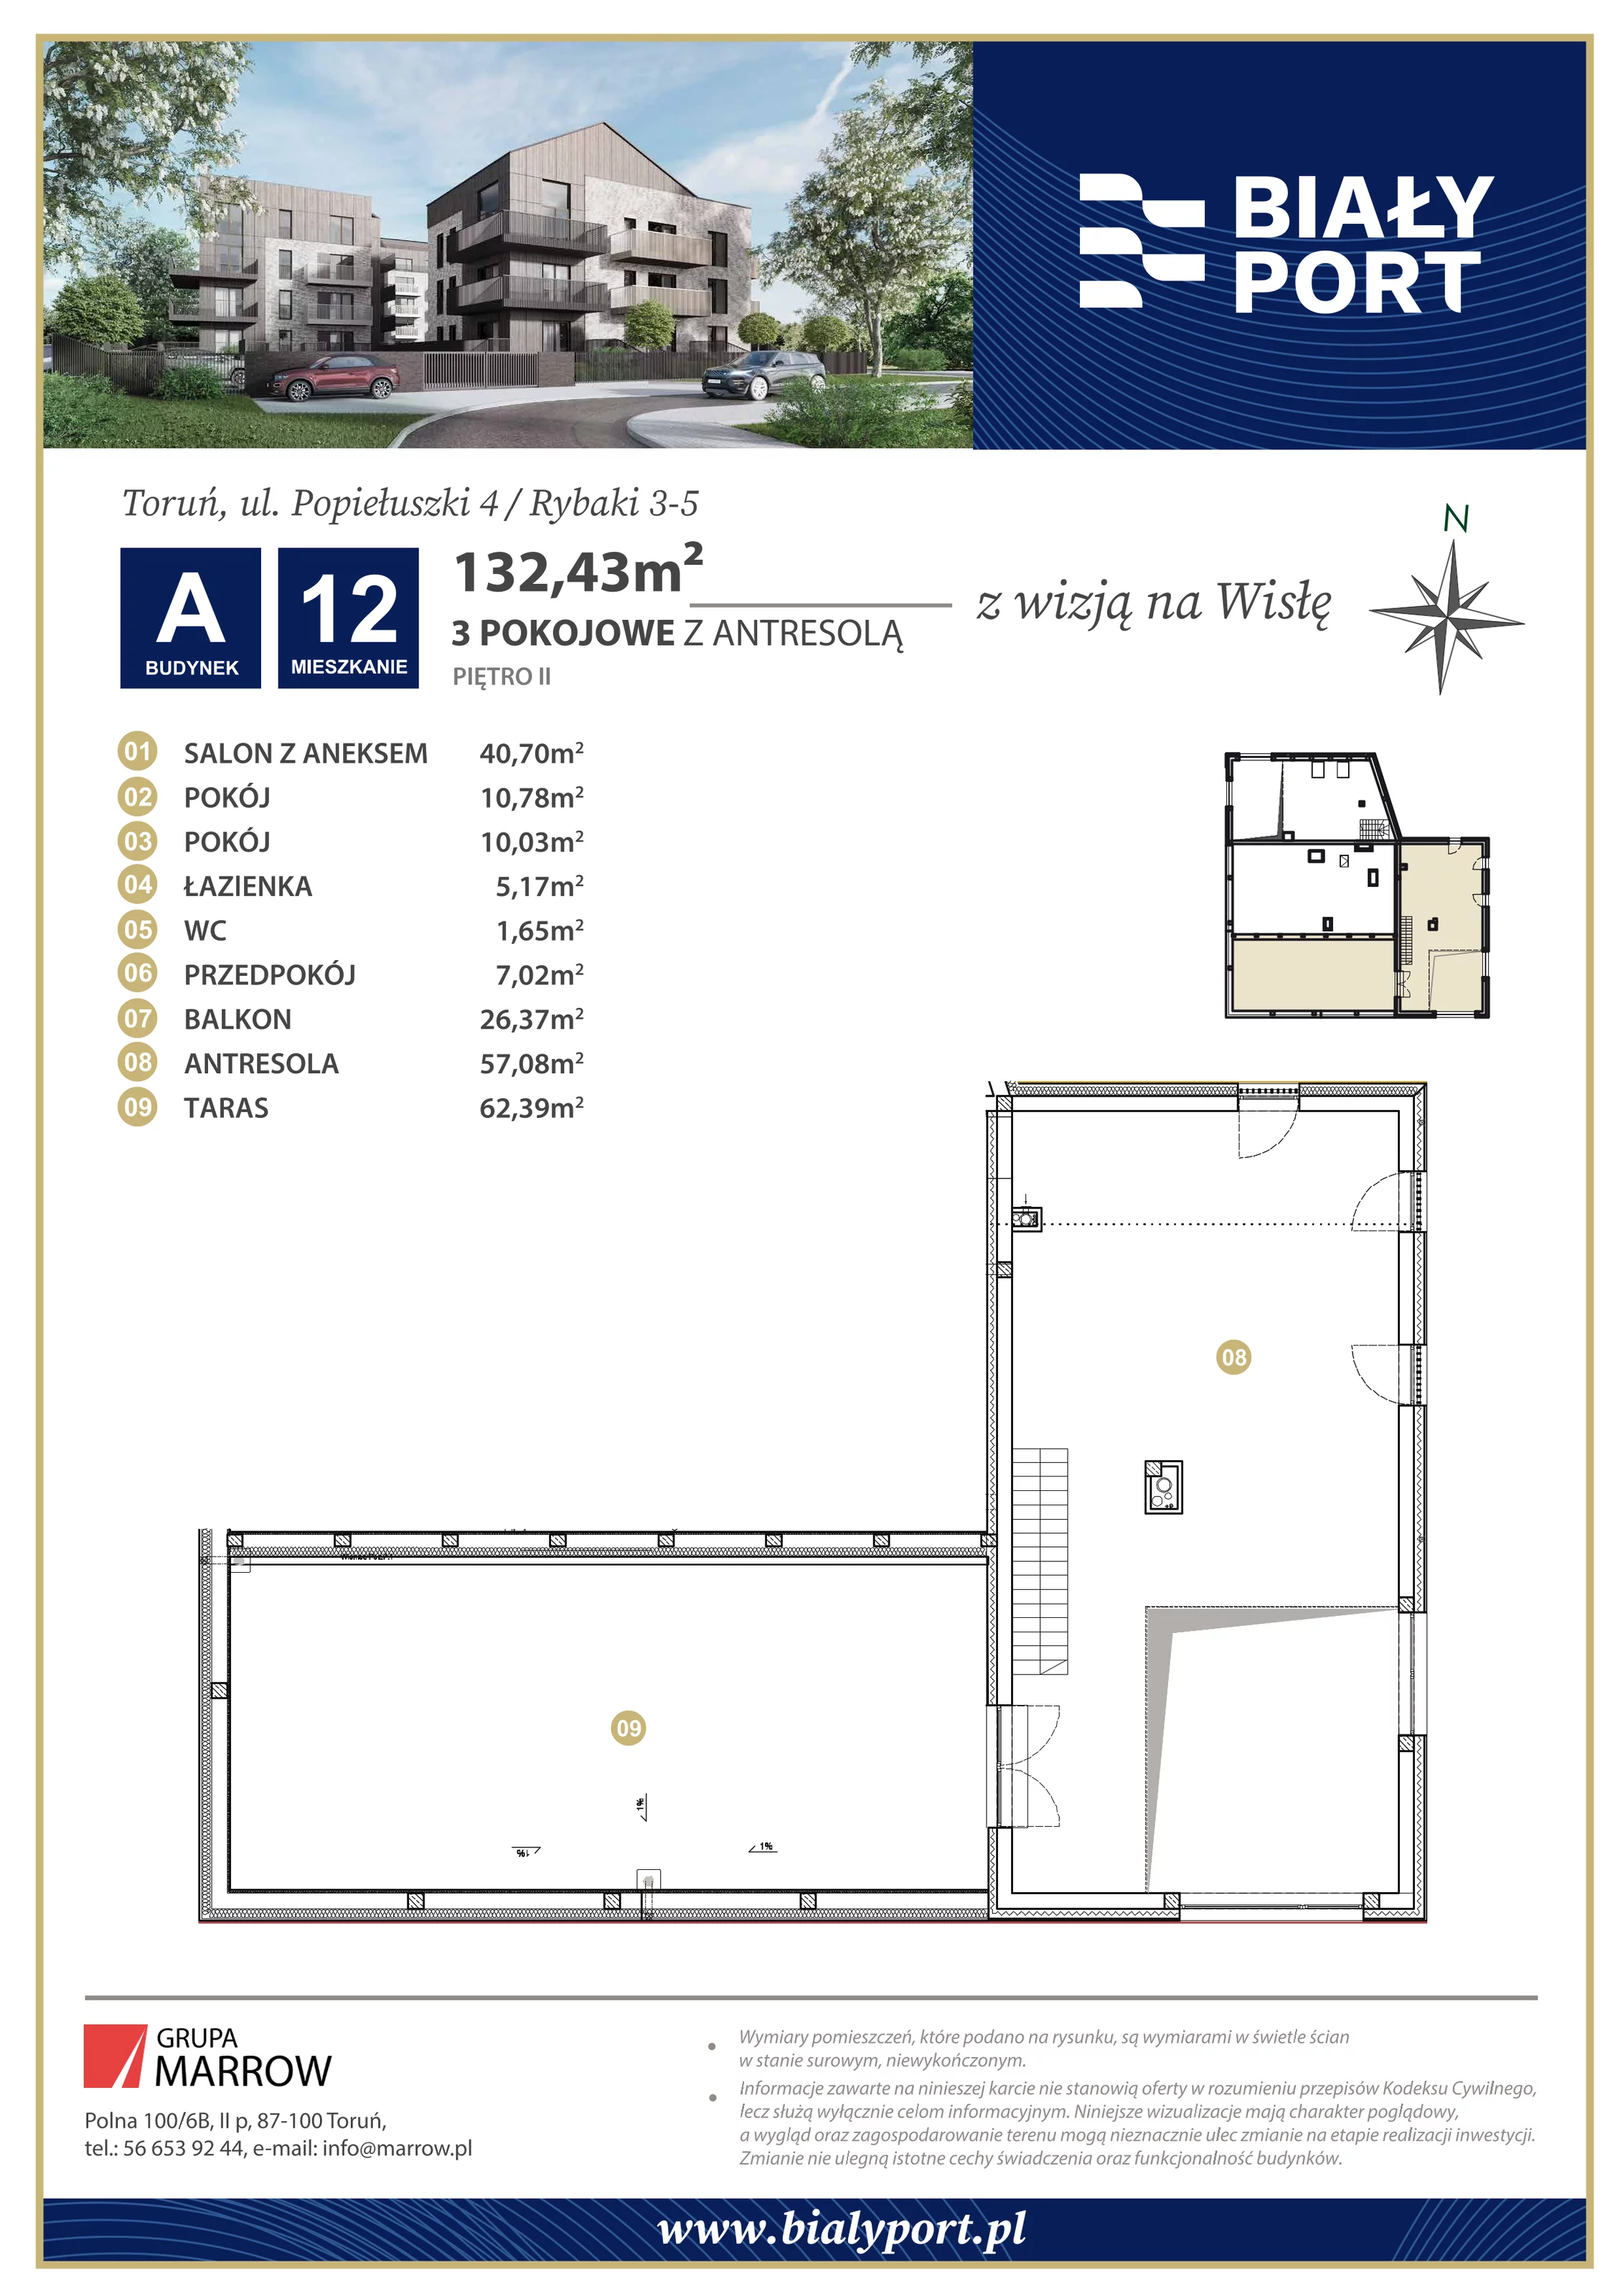 Mieszkanie 132,43 m², piętro 2, oferta nr 12, Biały Port, Toruń, Rybaki, ul. Popiełuszki 4